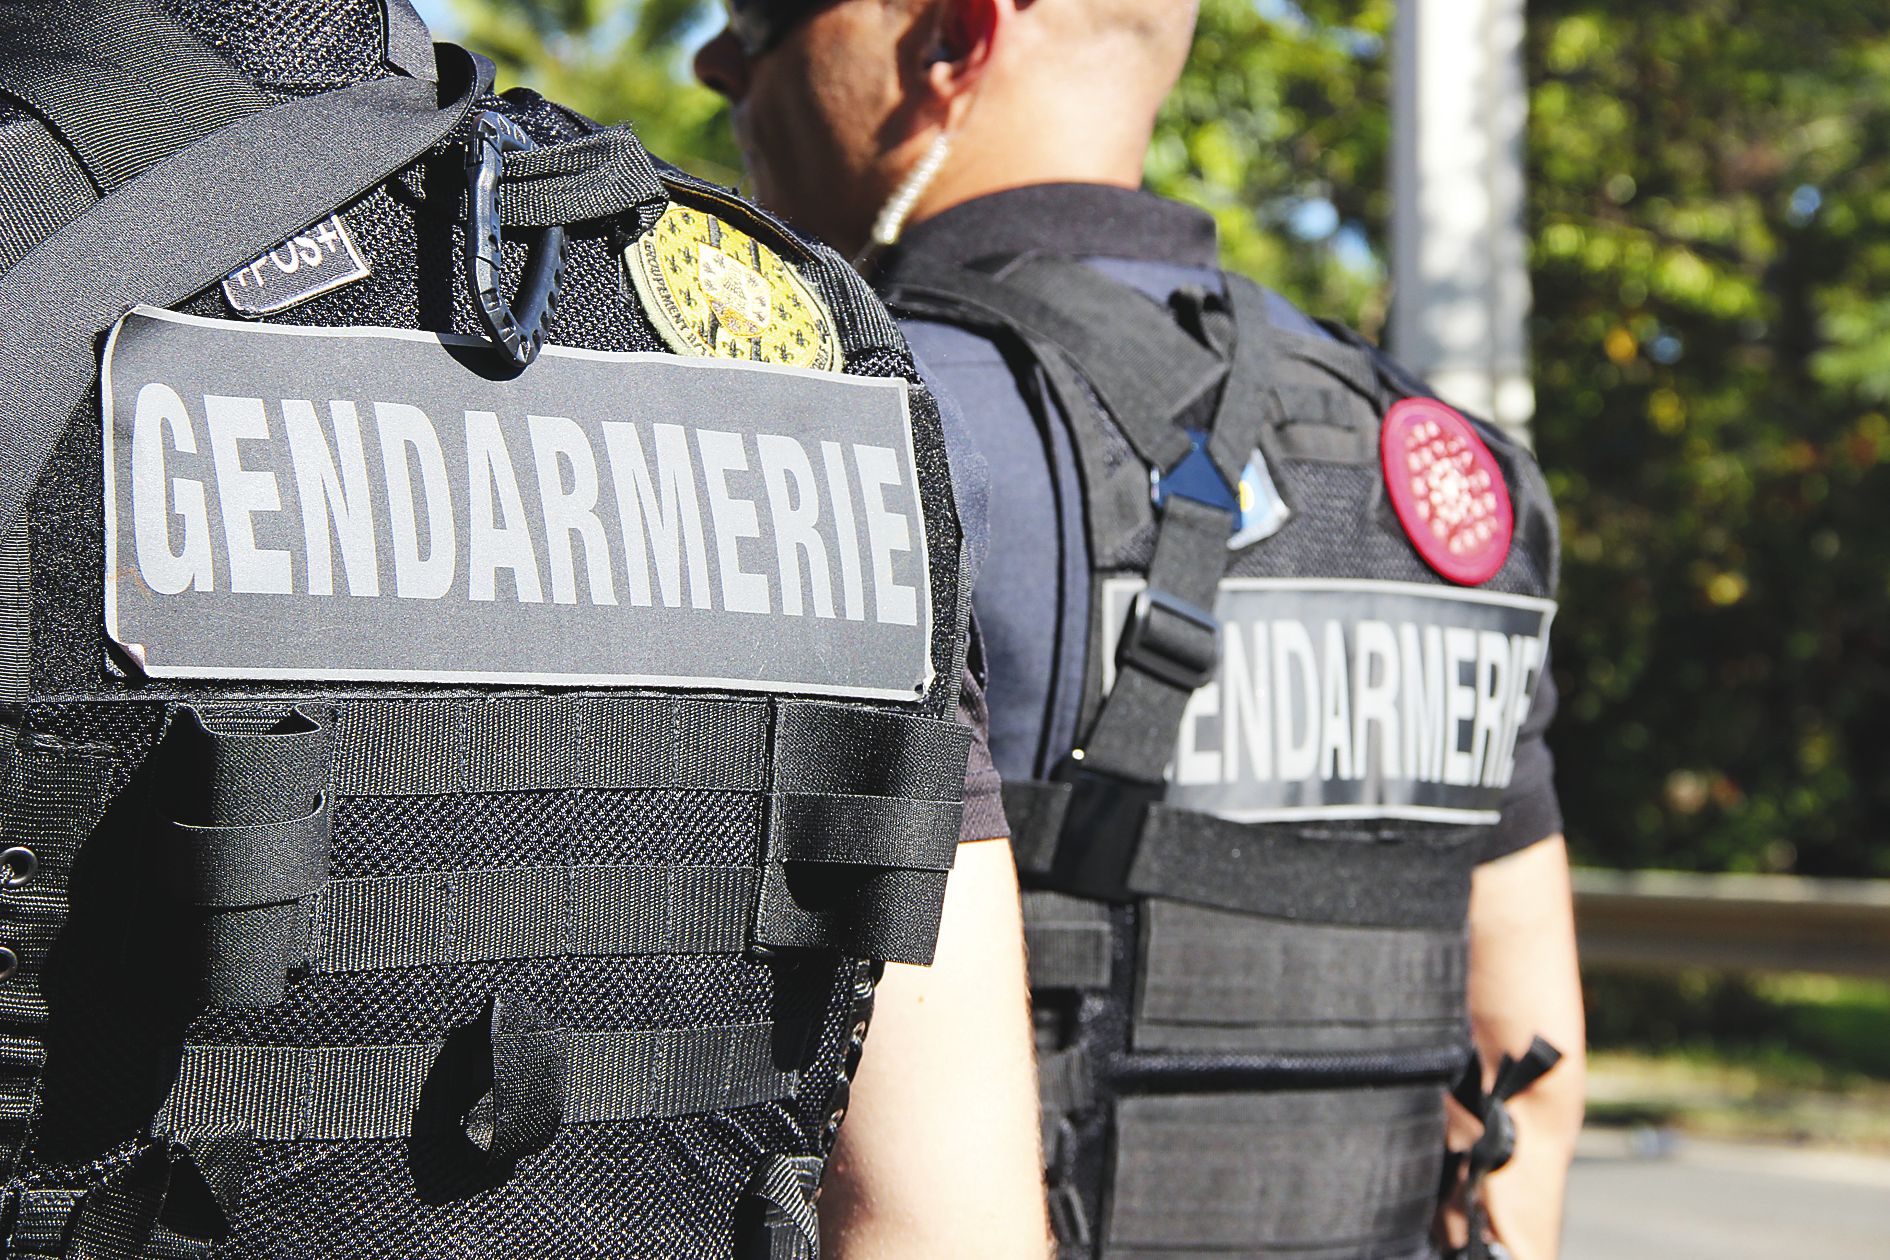 Les gendarmes ont mené une vague d’arrestations dimanche. Six personnes, soupçonnées d’avoir participé à cette flambée de violence, ont été interpellées et placées en garde à vue.